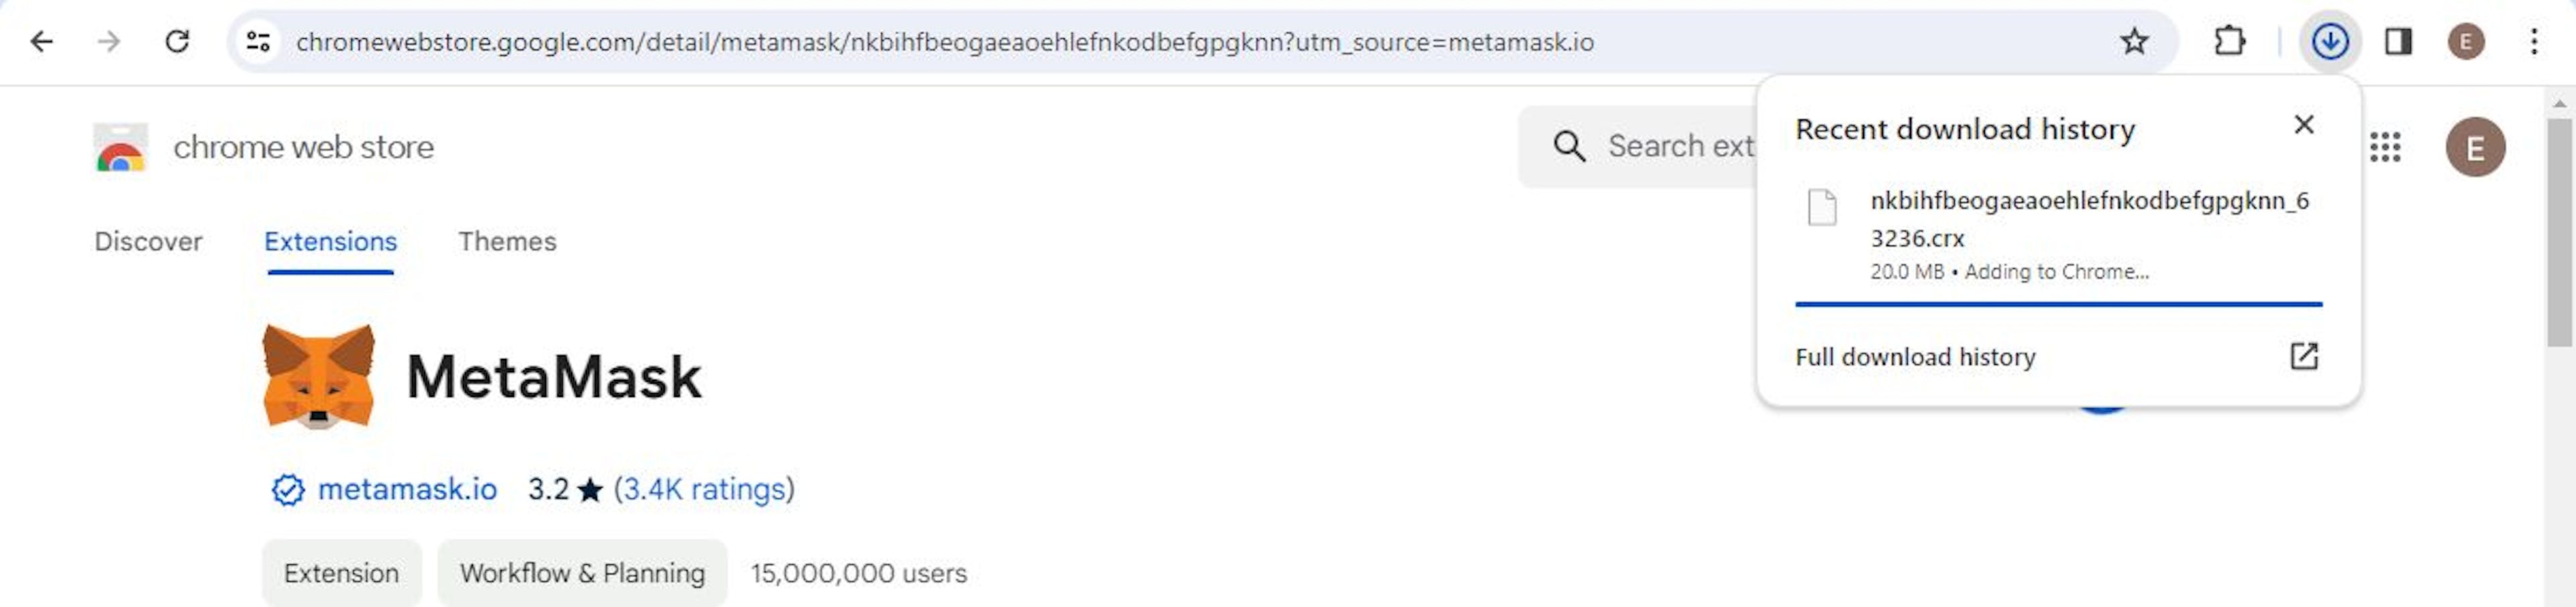 Imagen que muestra el proceso de instalación de MetaMask en Chrome.